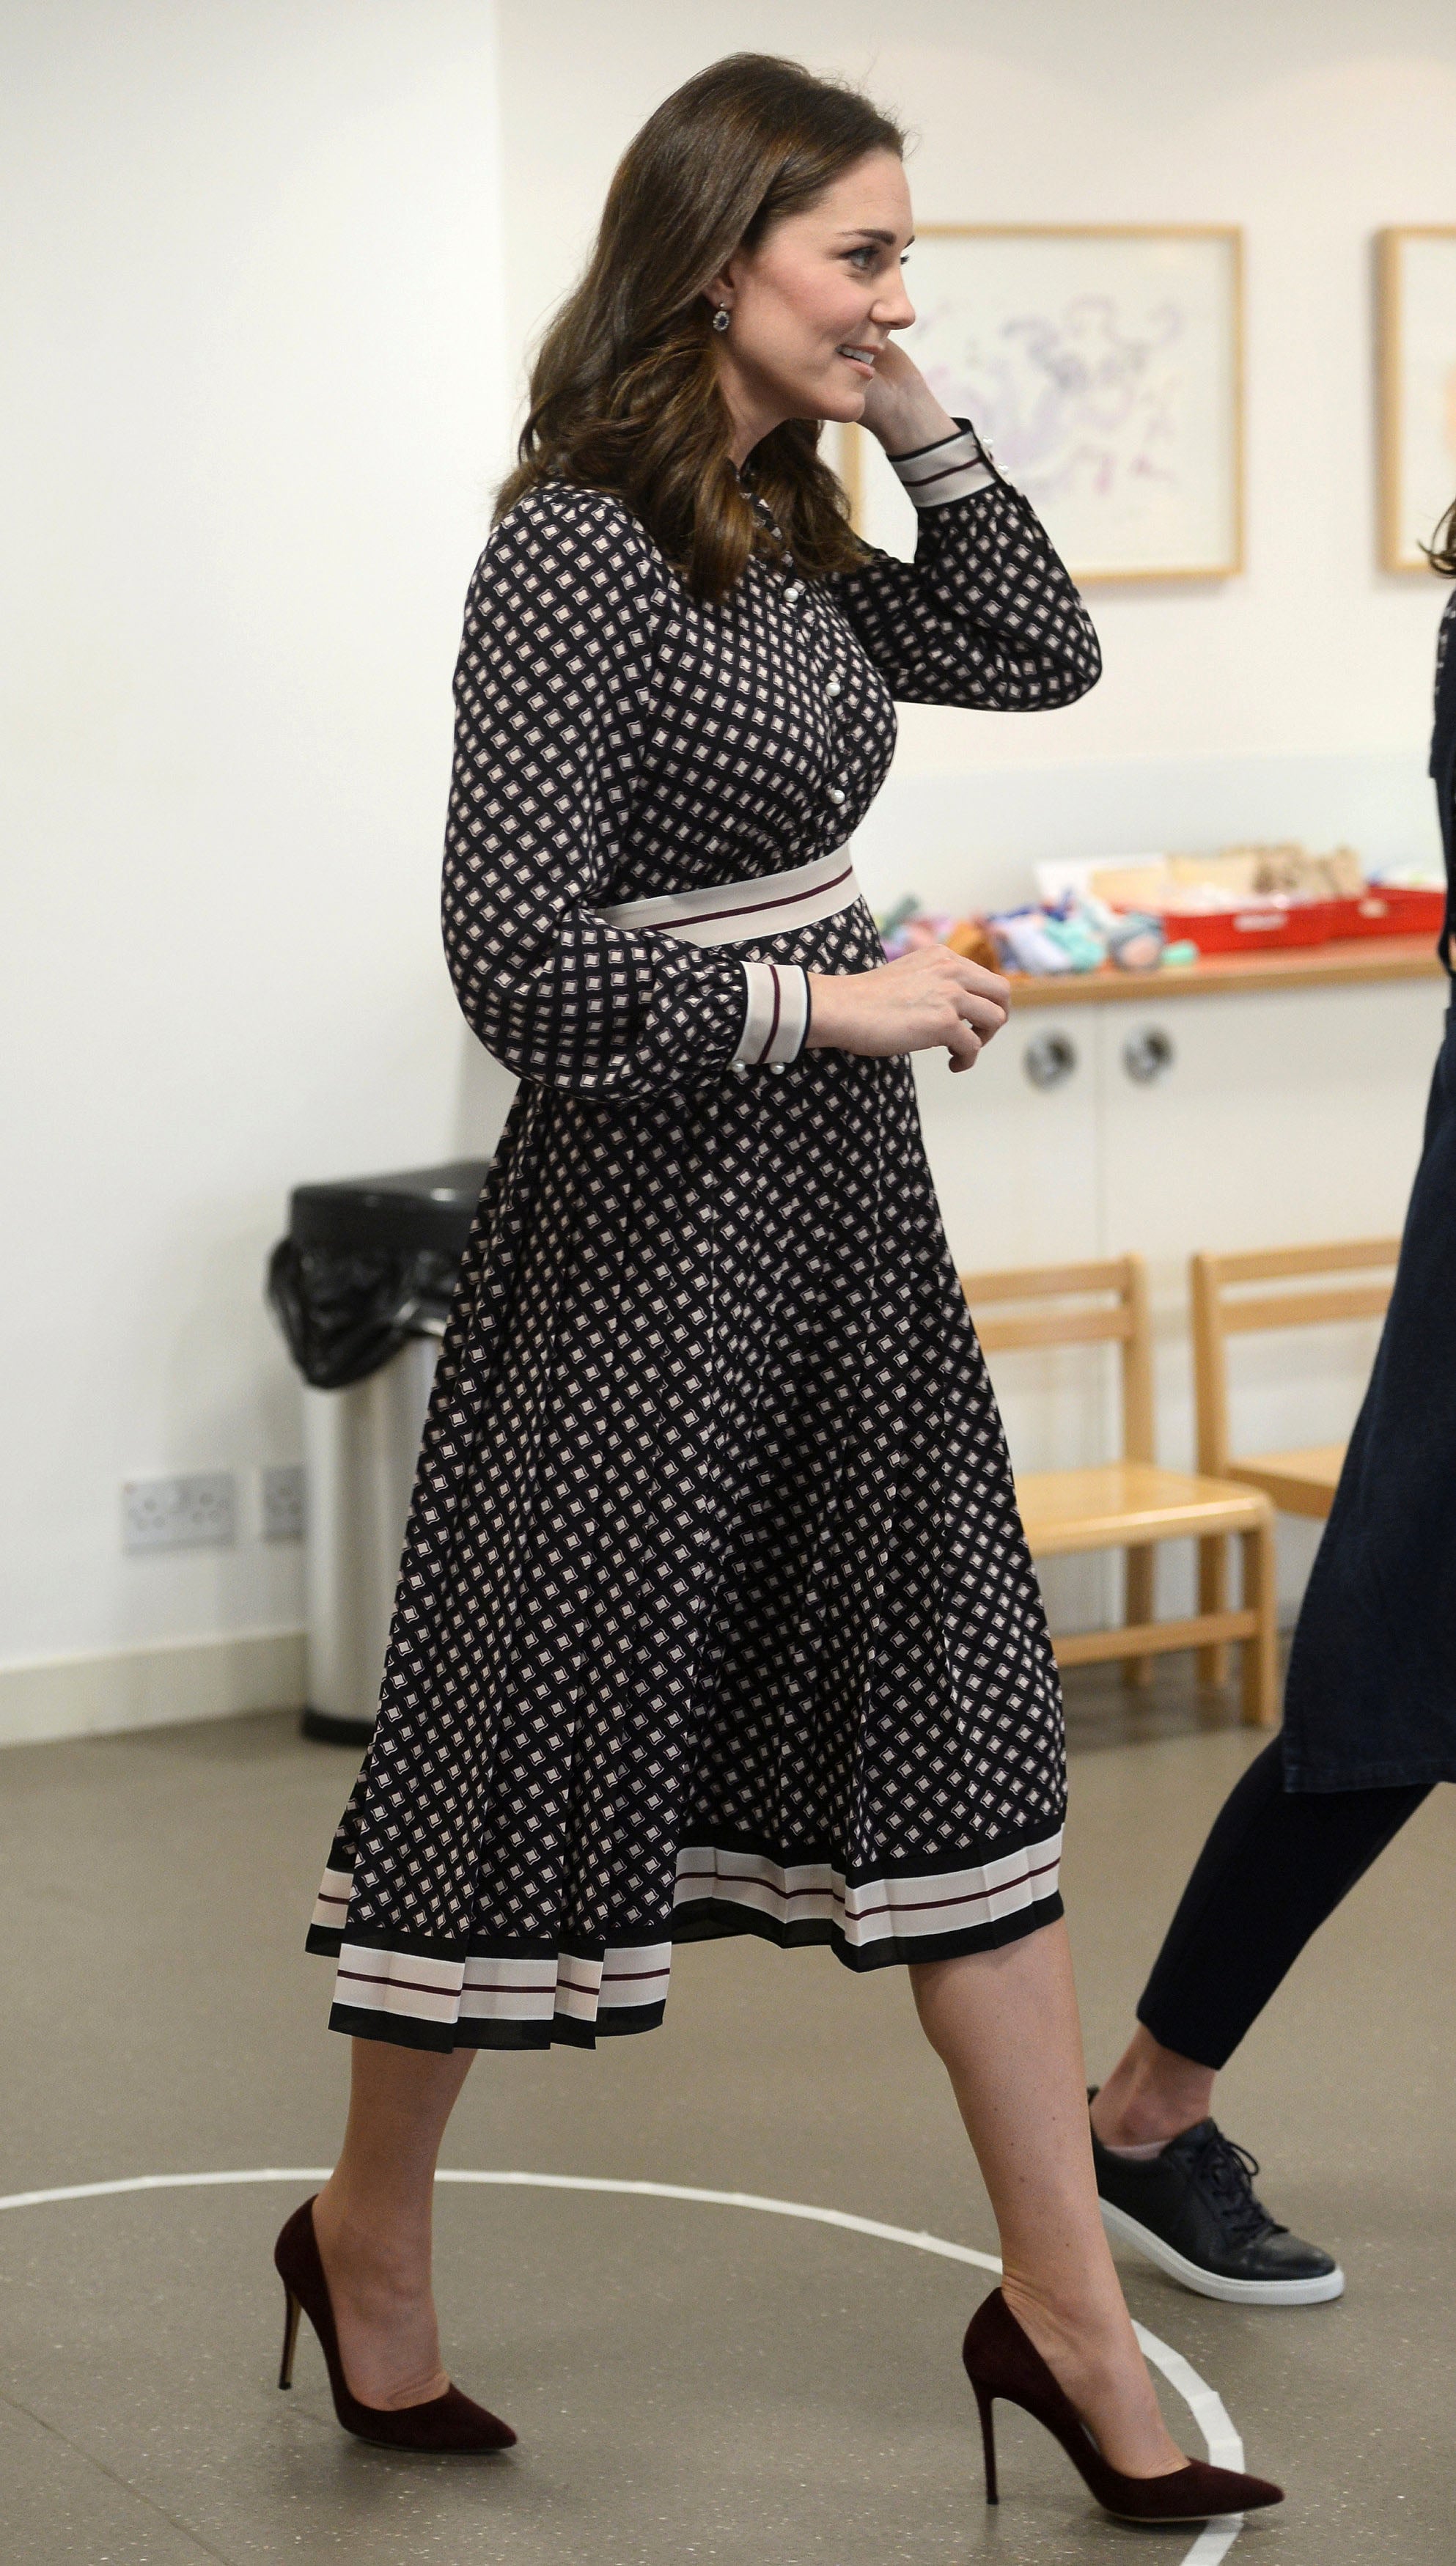 Kate Middleton Wearing Kate Spade Dress | POPSUGAR Fashion